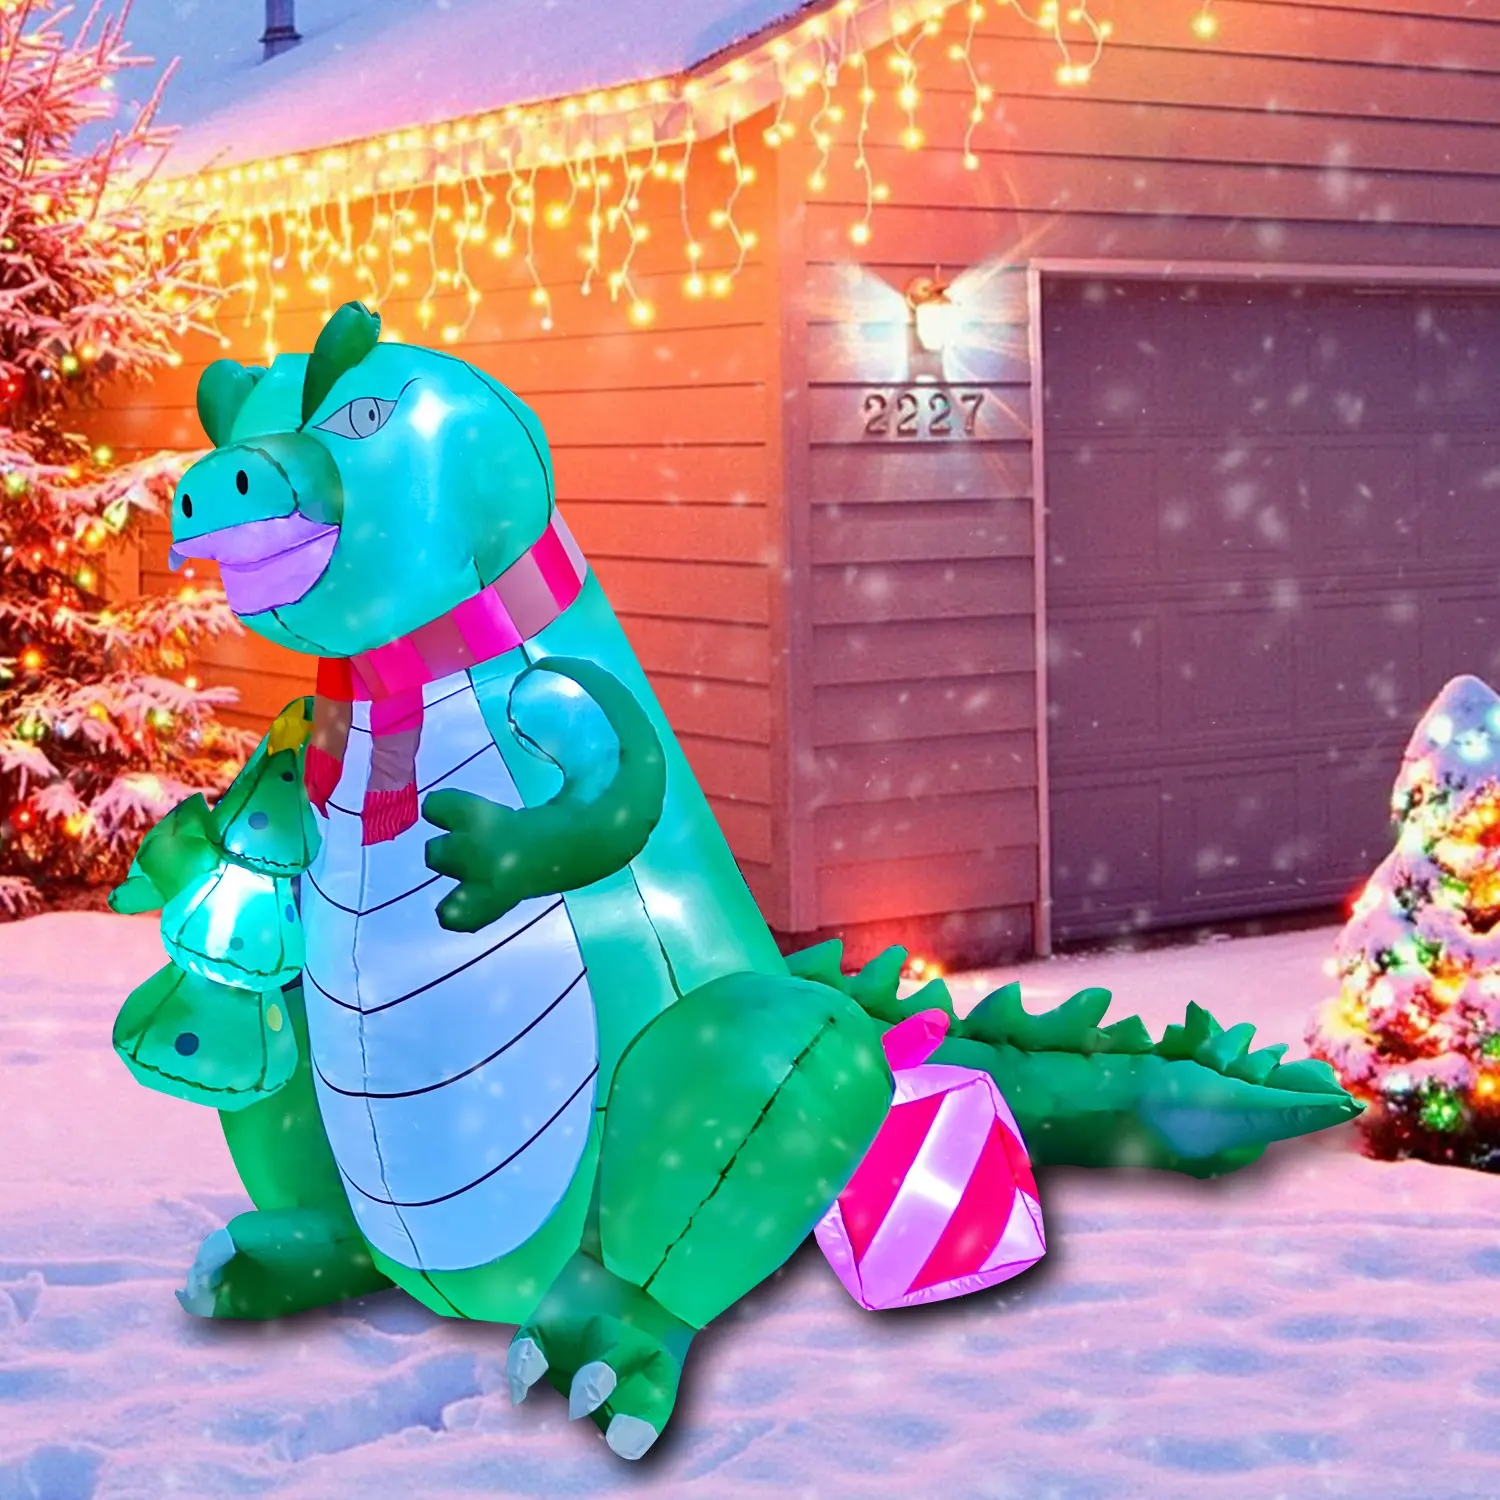 야외 파티 및 마당 장식 크리스마스 용품을 위한 6 피트 큰 괴물 거대한 공룡 풍선 크리스마스 장식